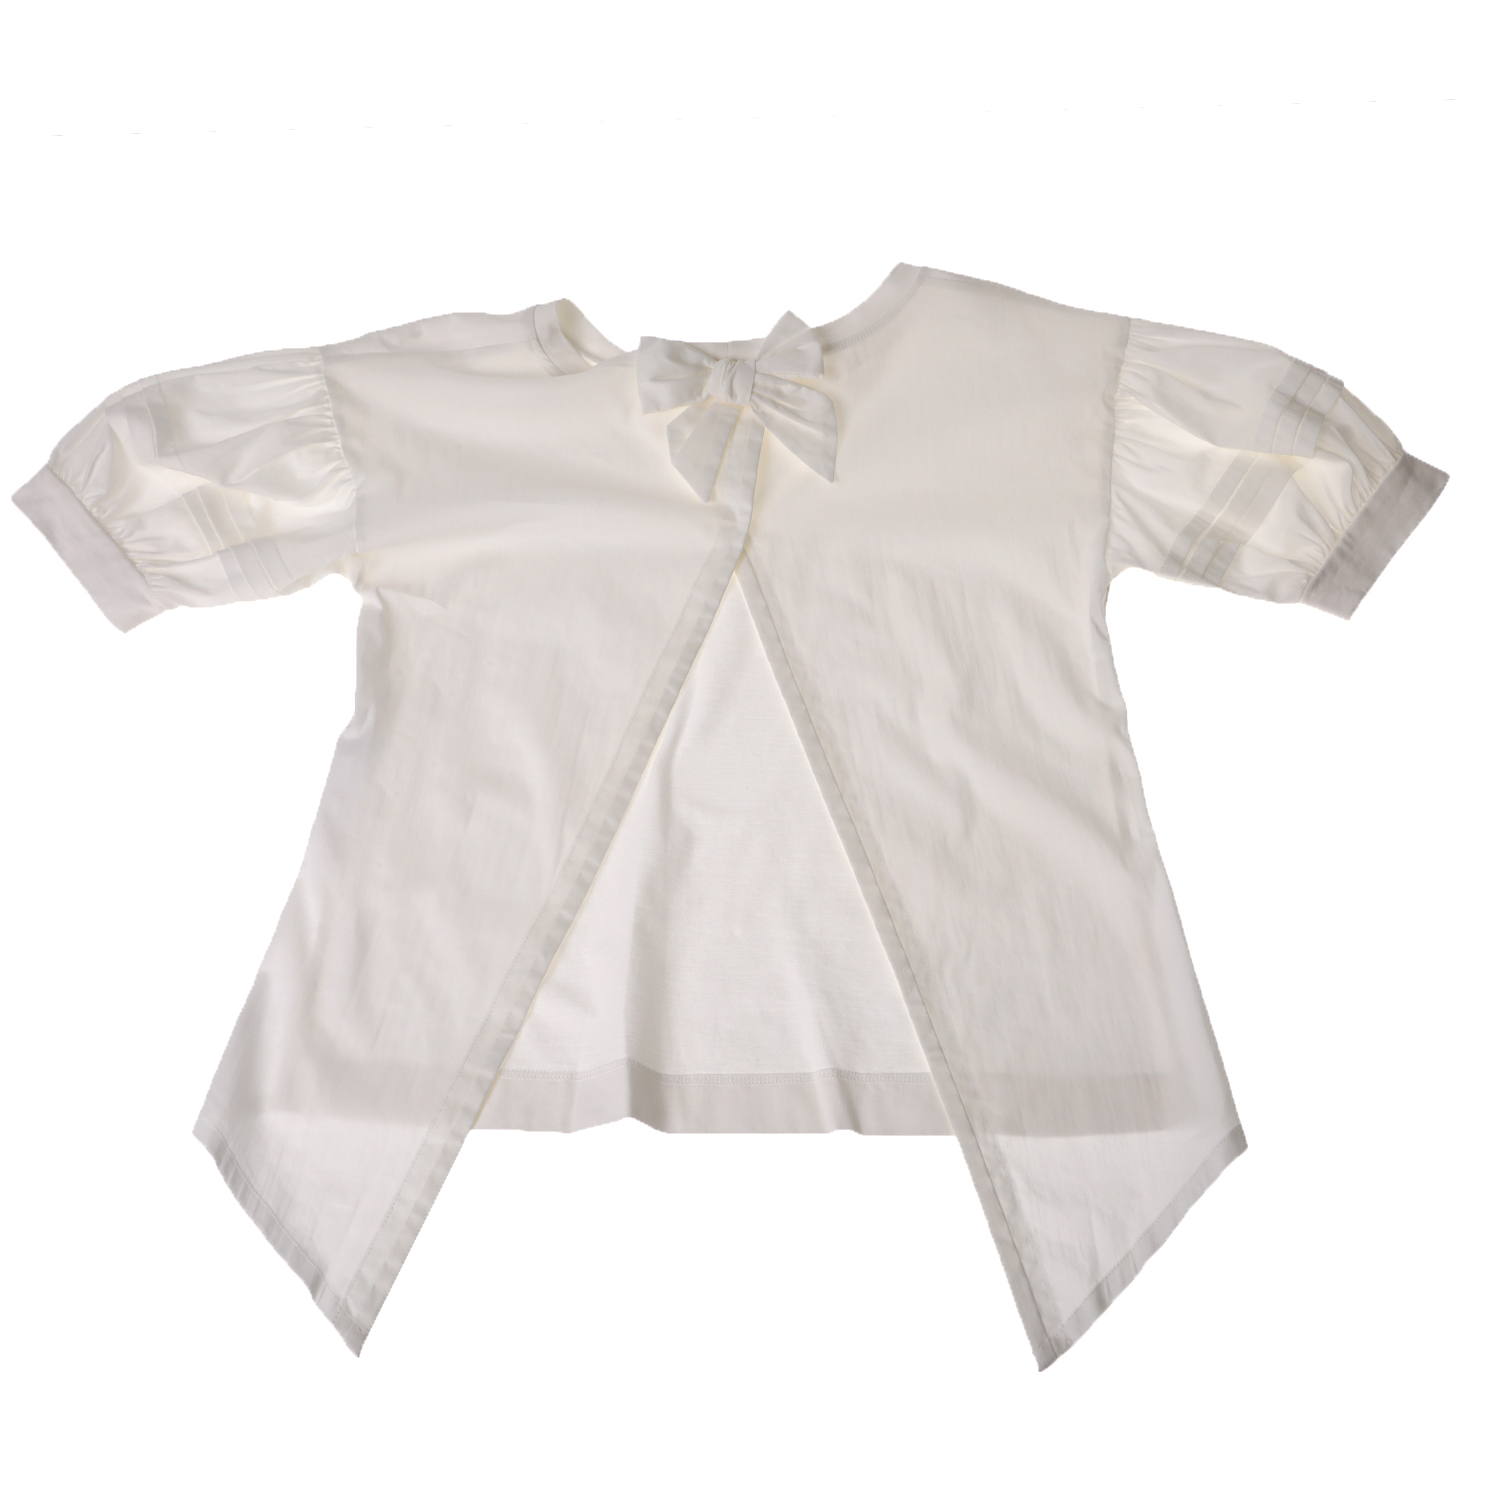 Παιδικά/Girls/Ρούχα/Μπλούζες Κοντομάνικες-Αμάνικες JAKIOO - Παιδικό κοντομάνικο τοπ JAKIOO APERTA DIETRO λευκό